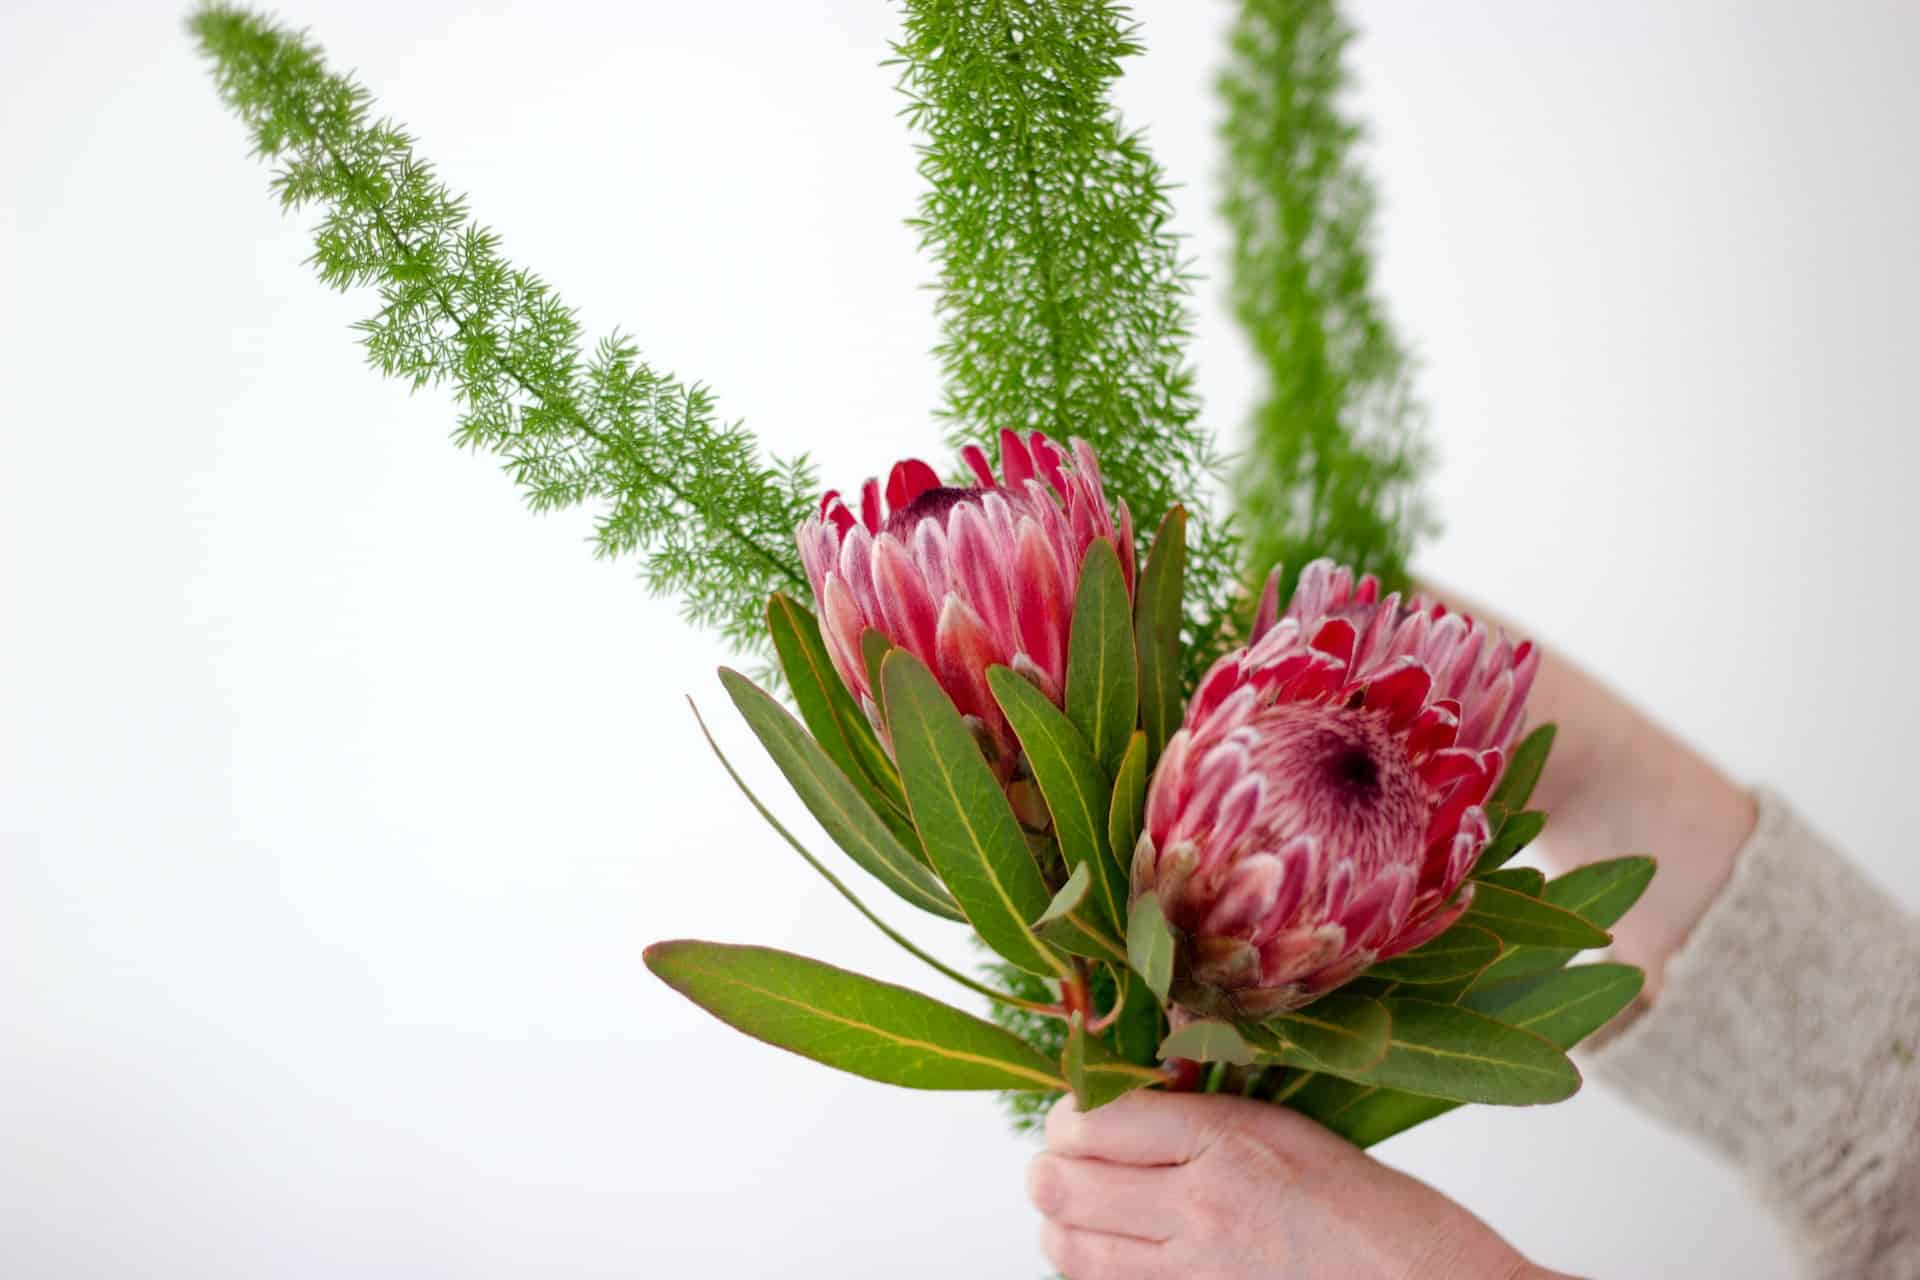 Les alternatives durables aux arrangements floraux traditionnels pour les mariages